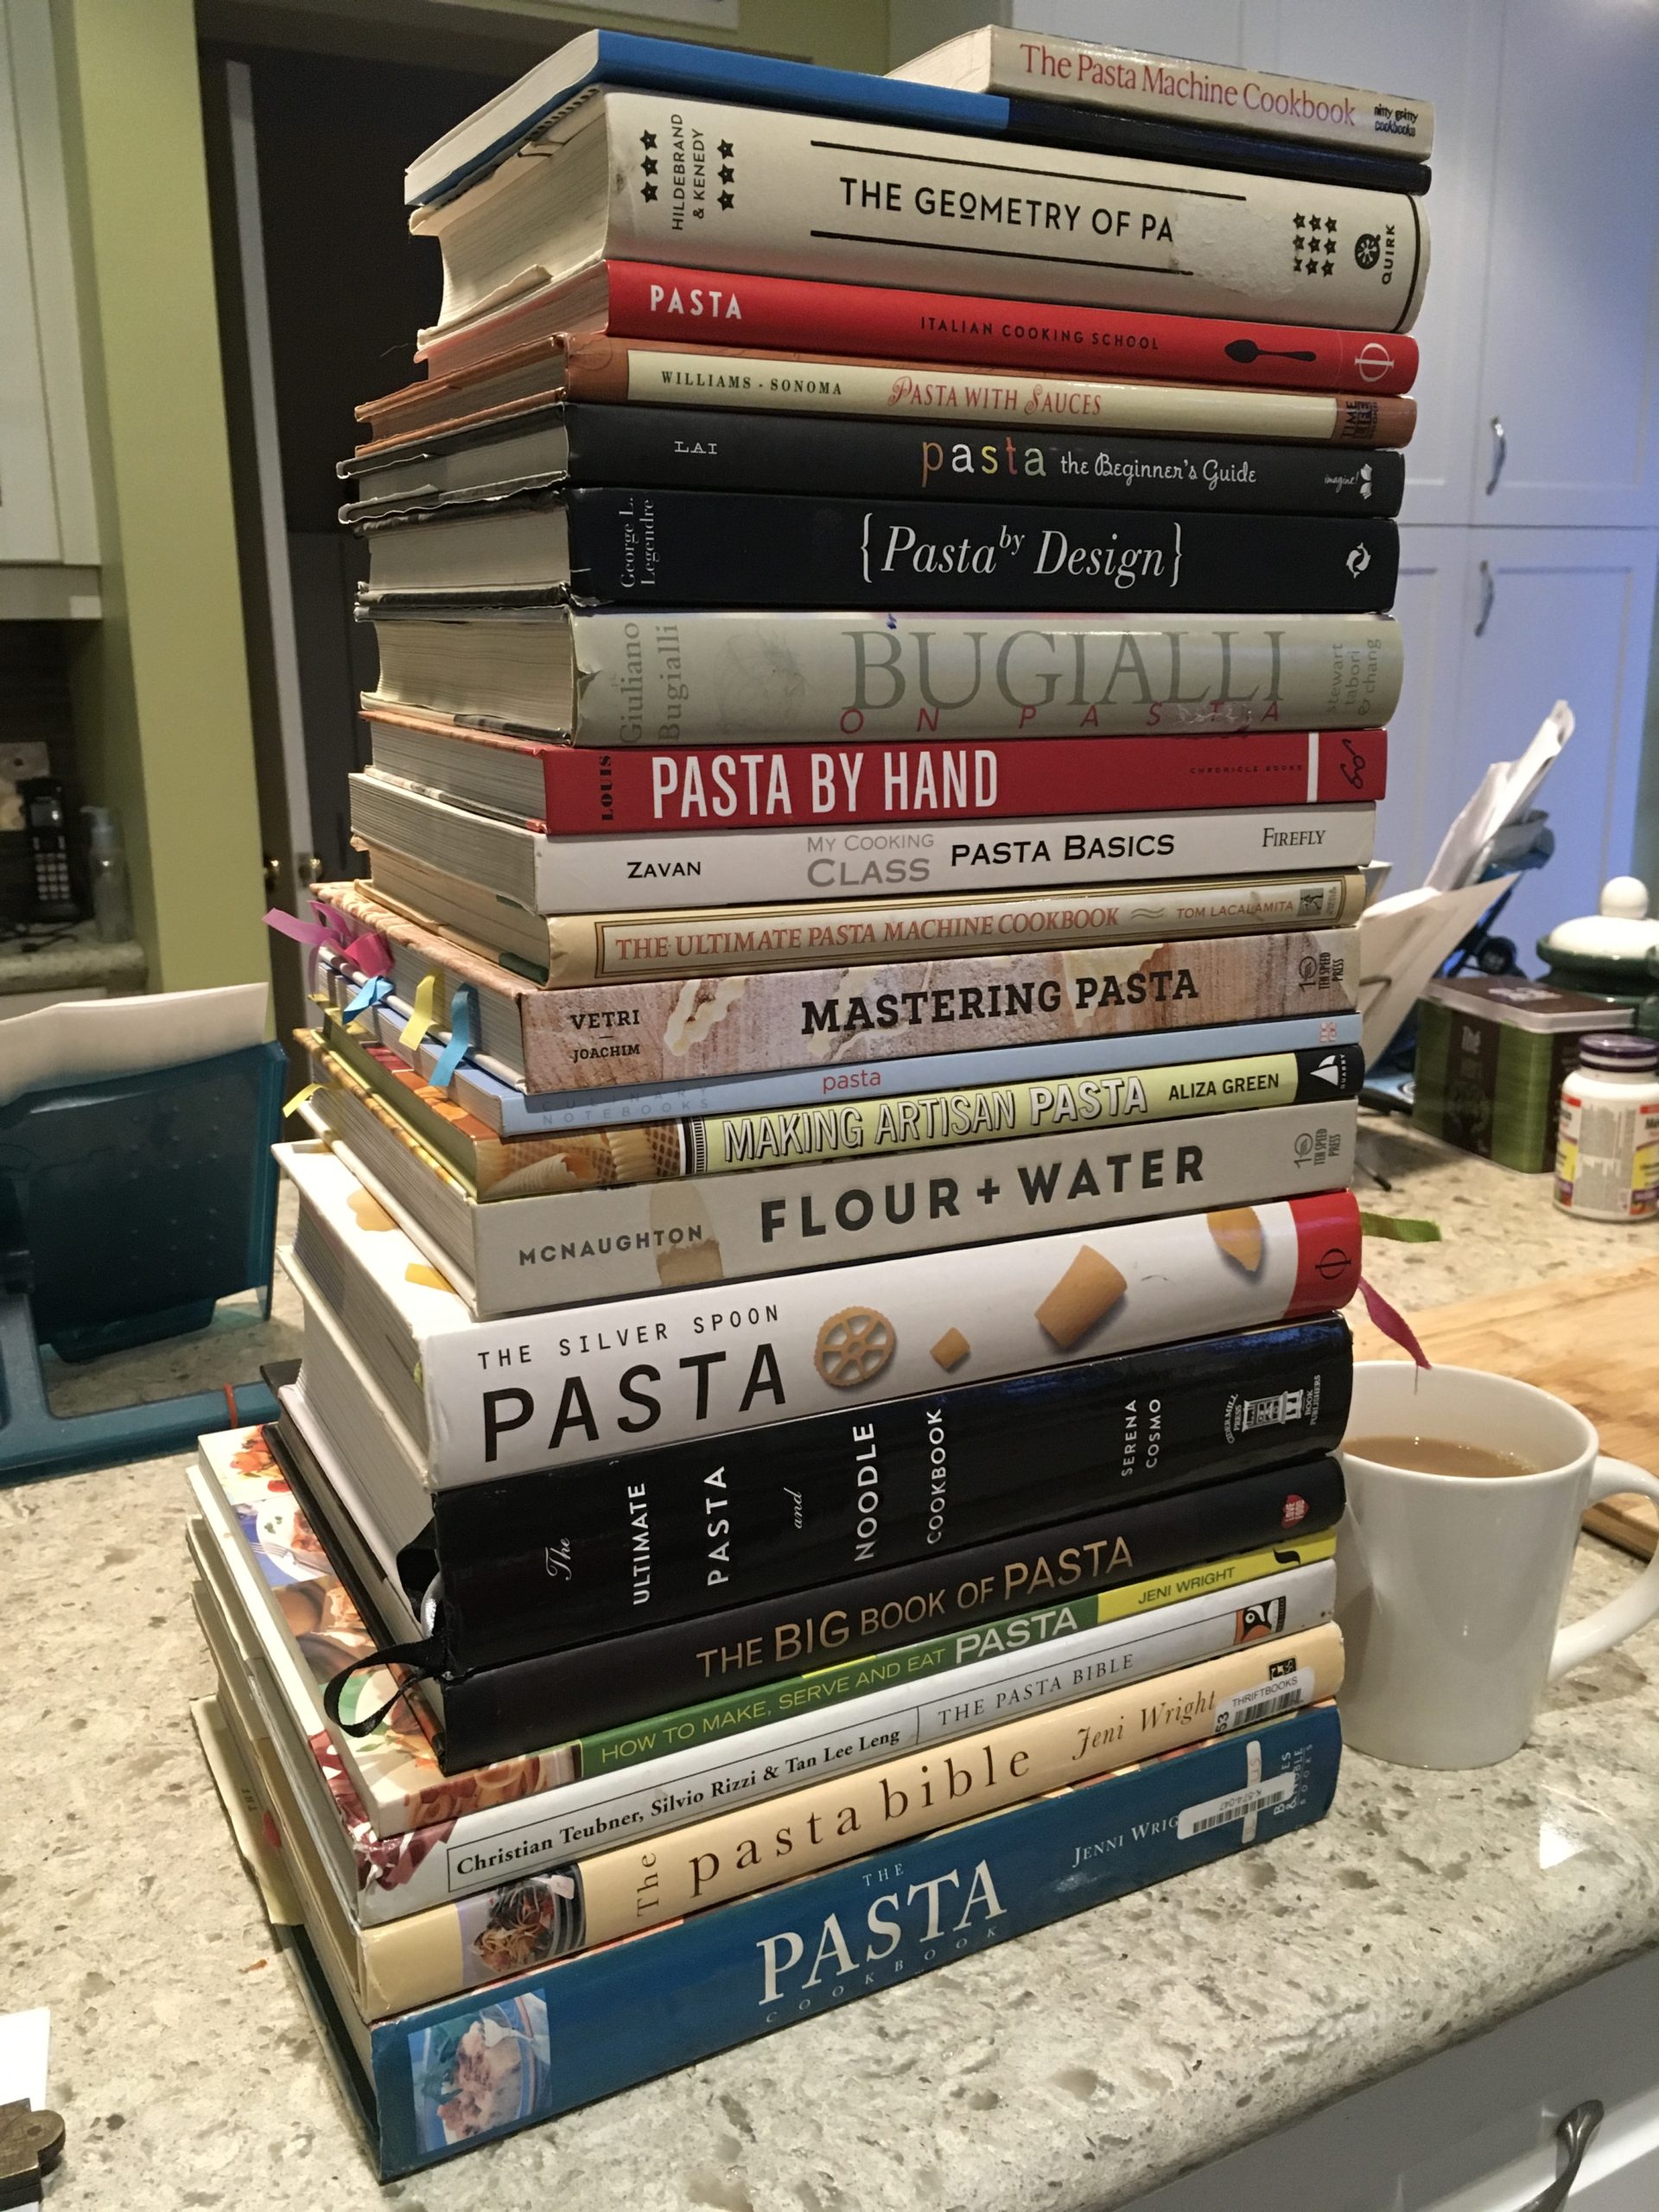 My pasta books